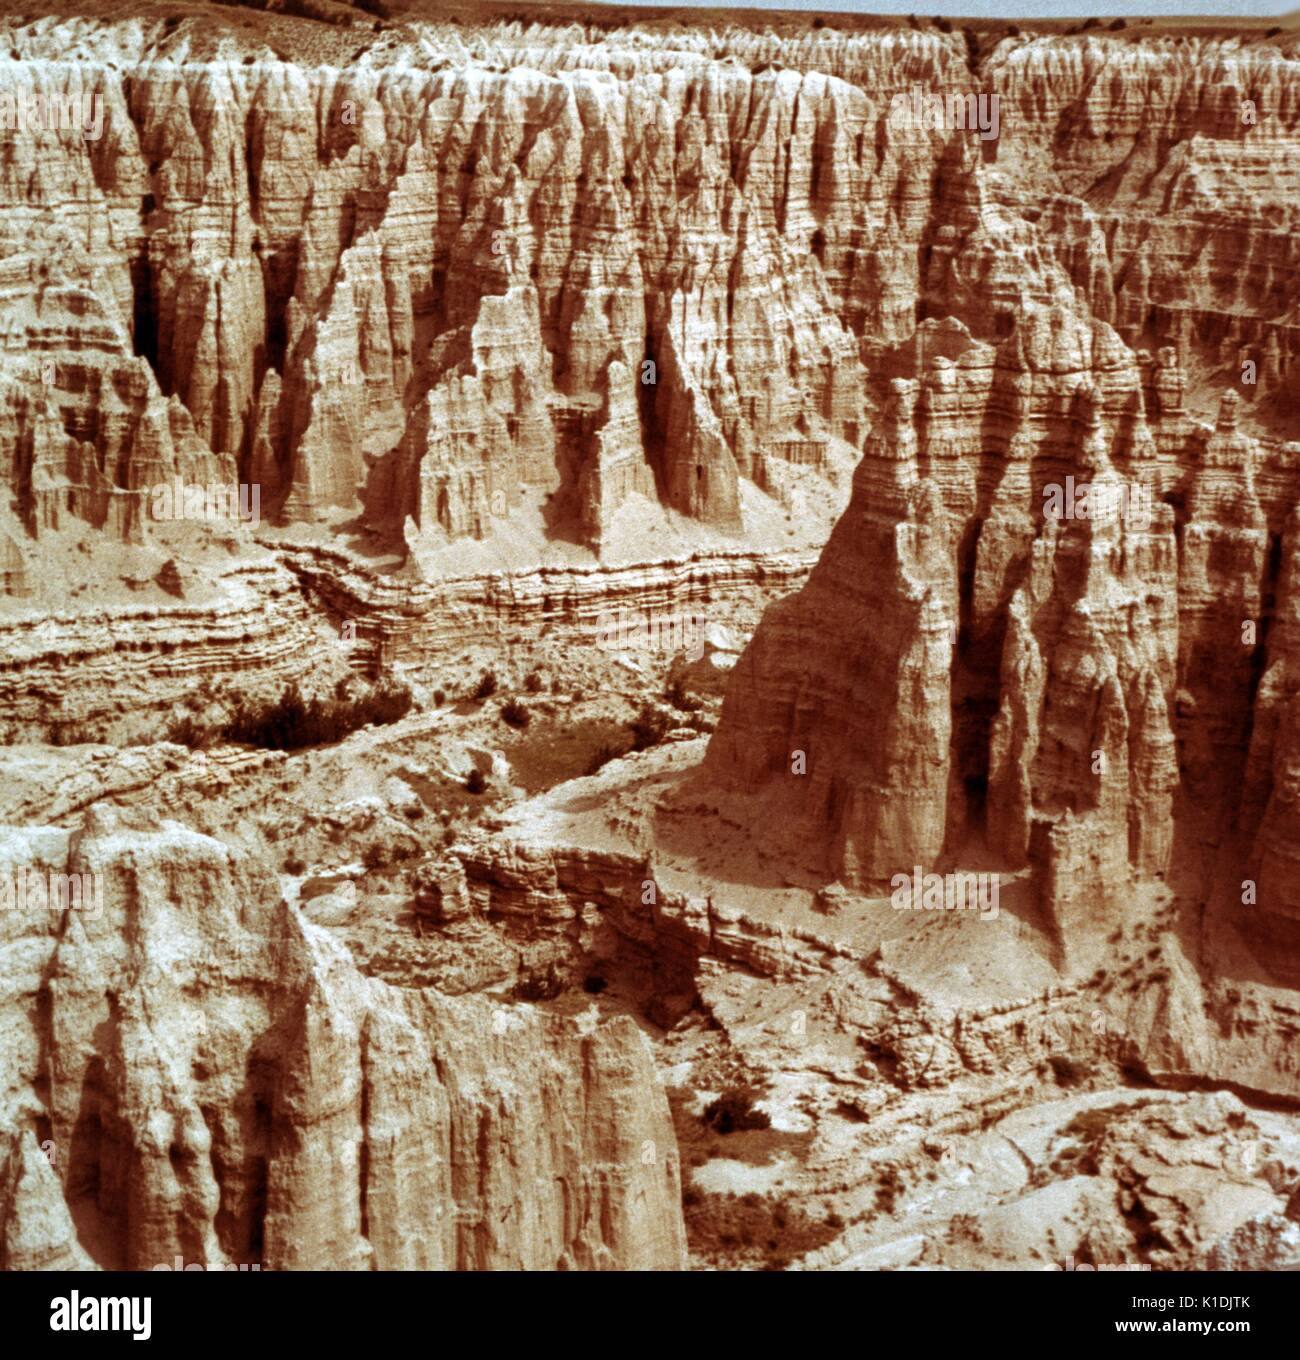 Rock formation de stries et d'autres montrant des caractéristiques géologiques, Badlands National Park (Dakota du Sud), 1975. Banque D'Images